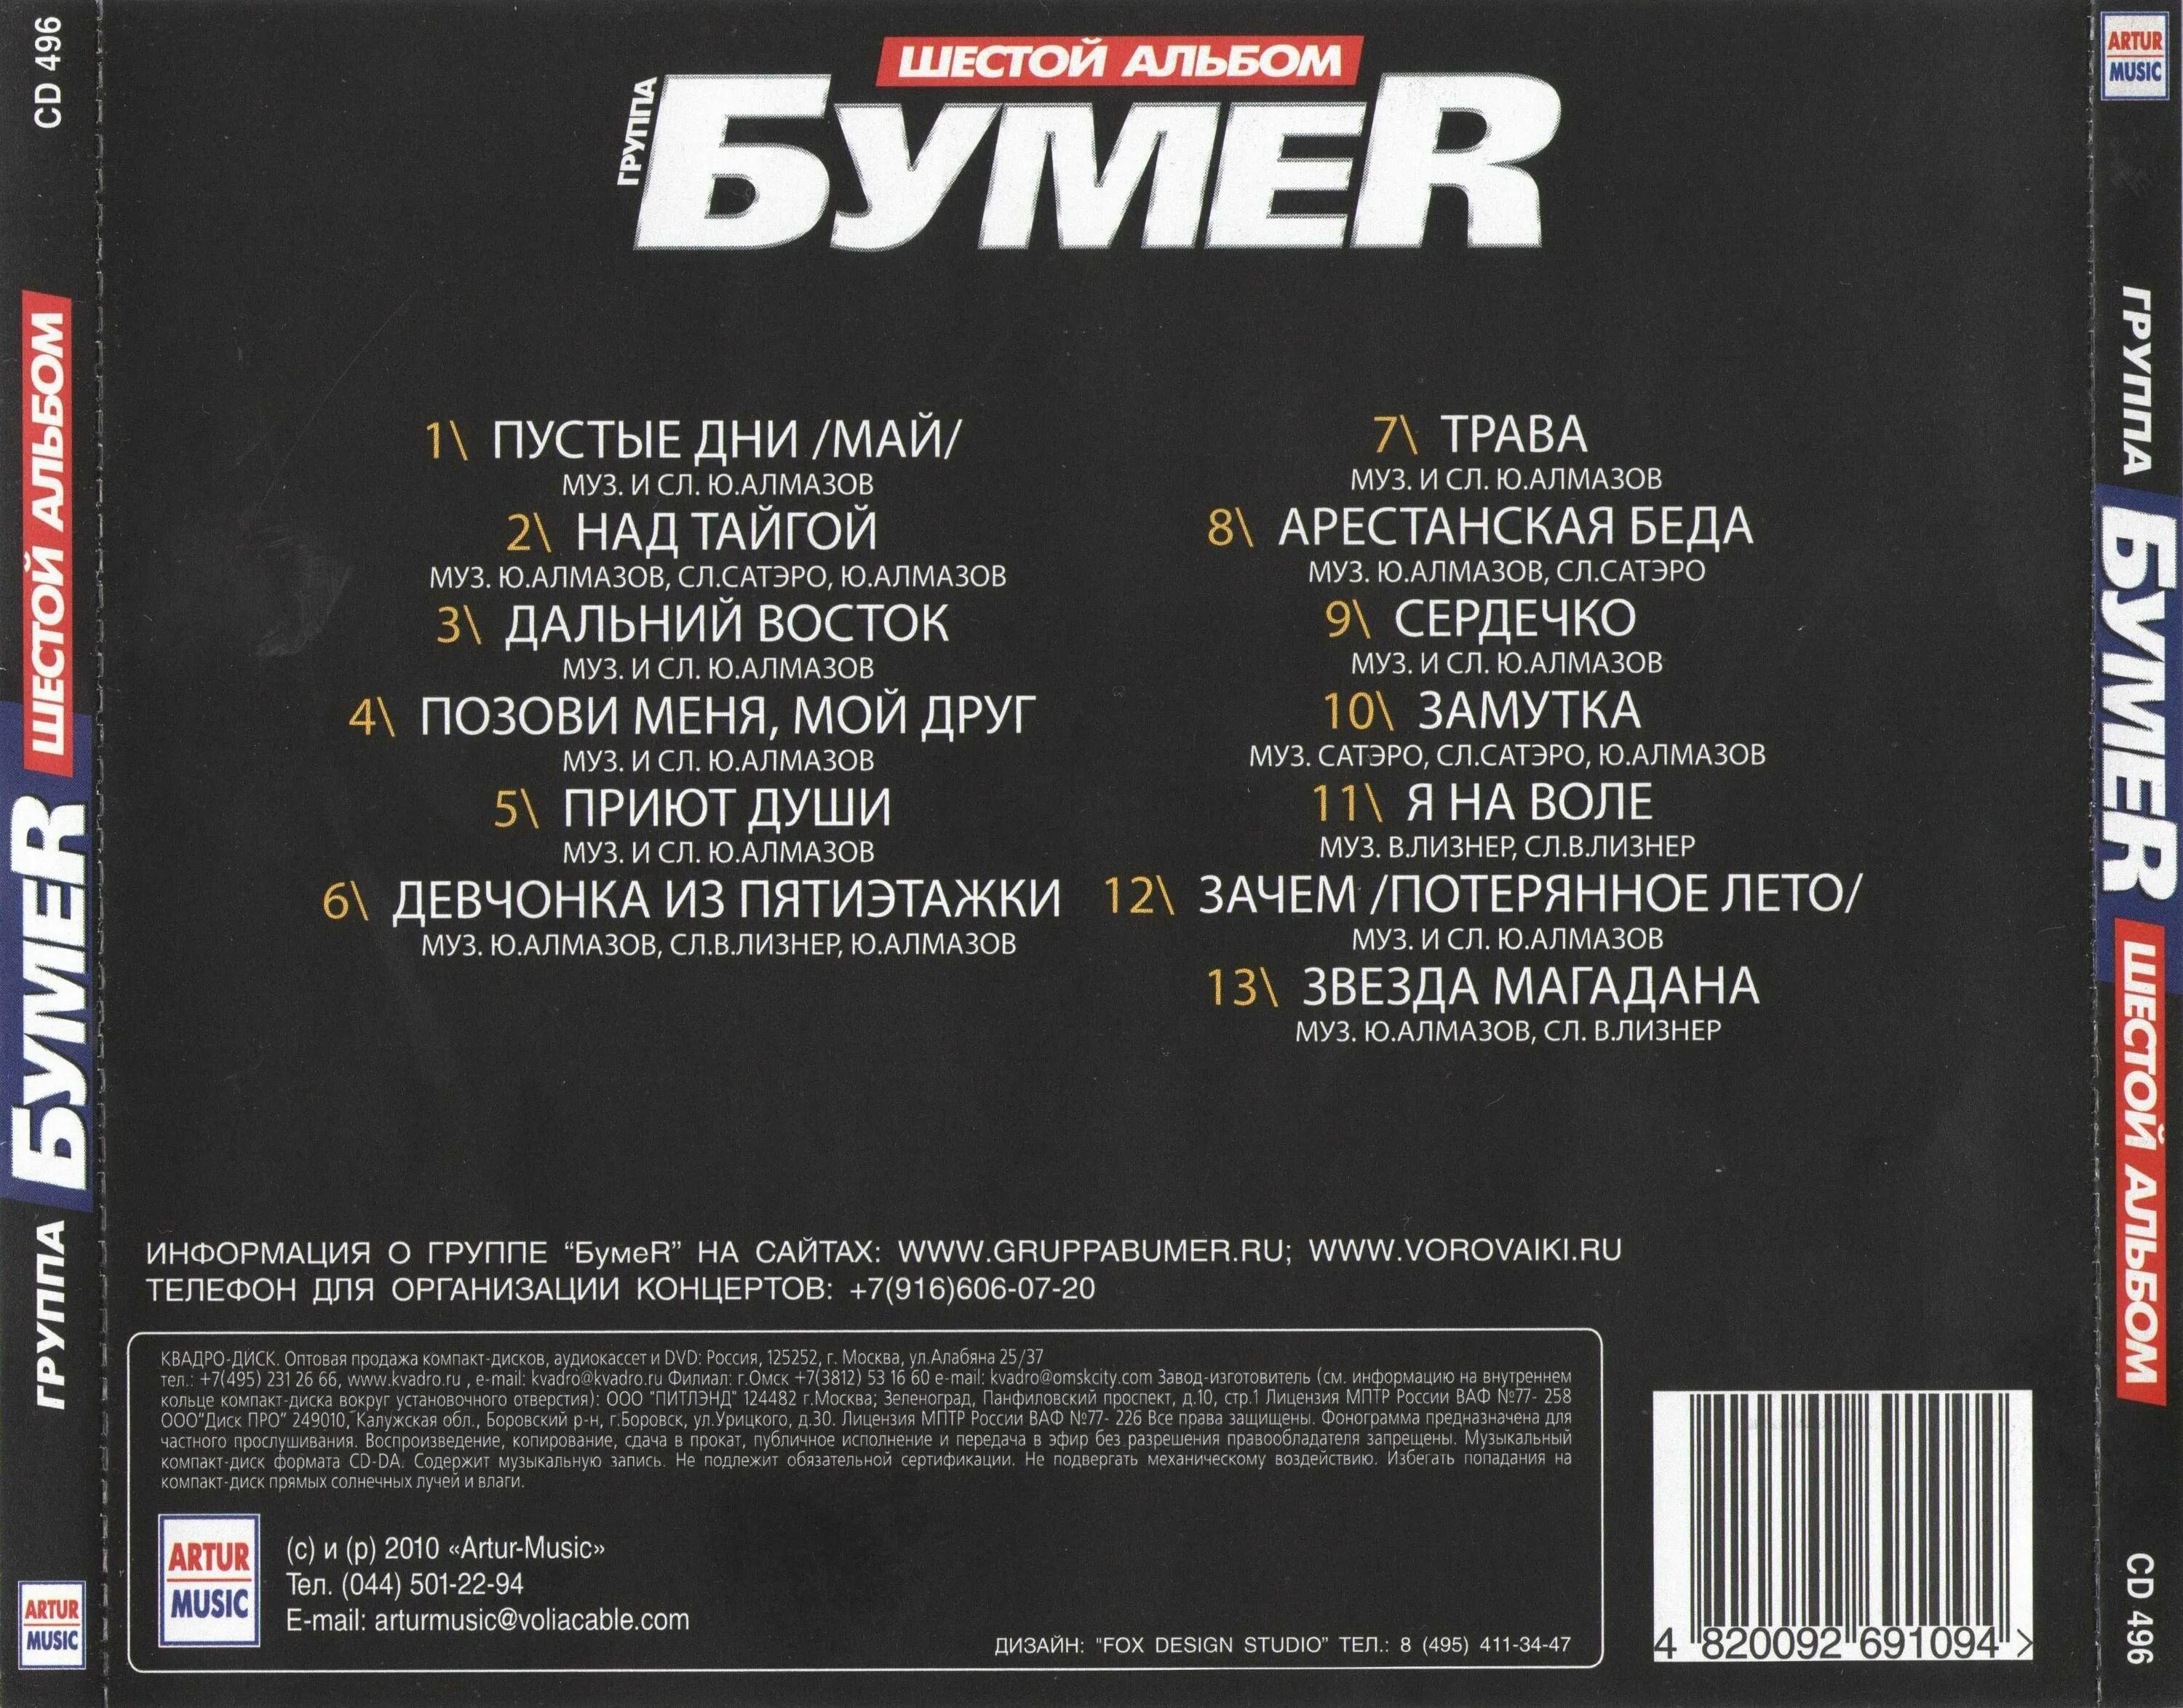 Бумер сборник песен. Бумер альбом шестой альбом. БУМЕR - шестой альбом 2010. Группа бумер альбомы. Бумер обложка альбома.